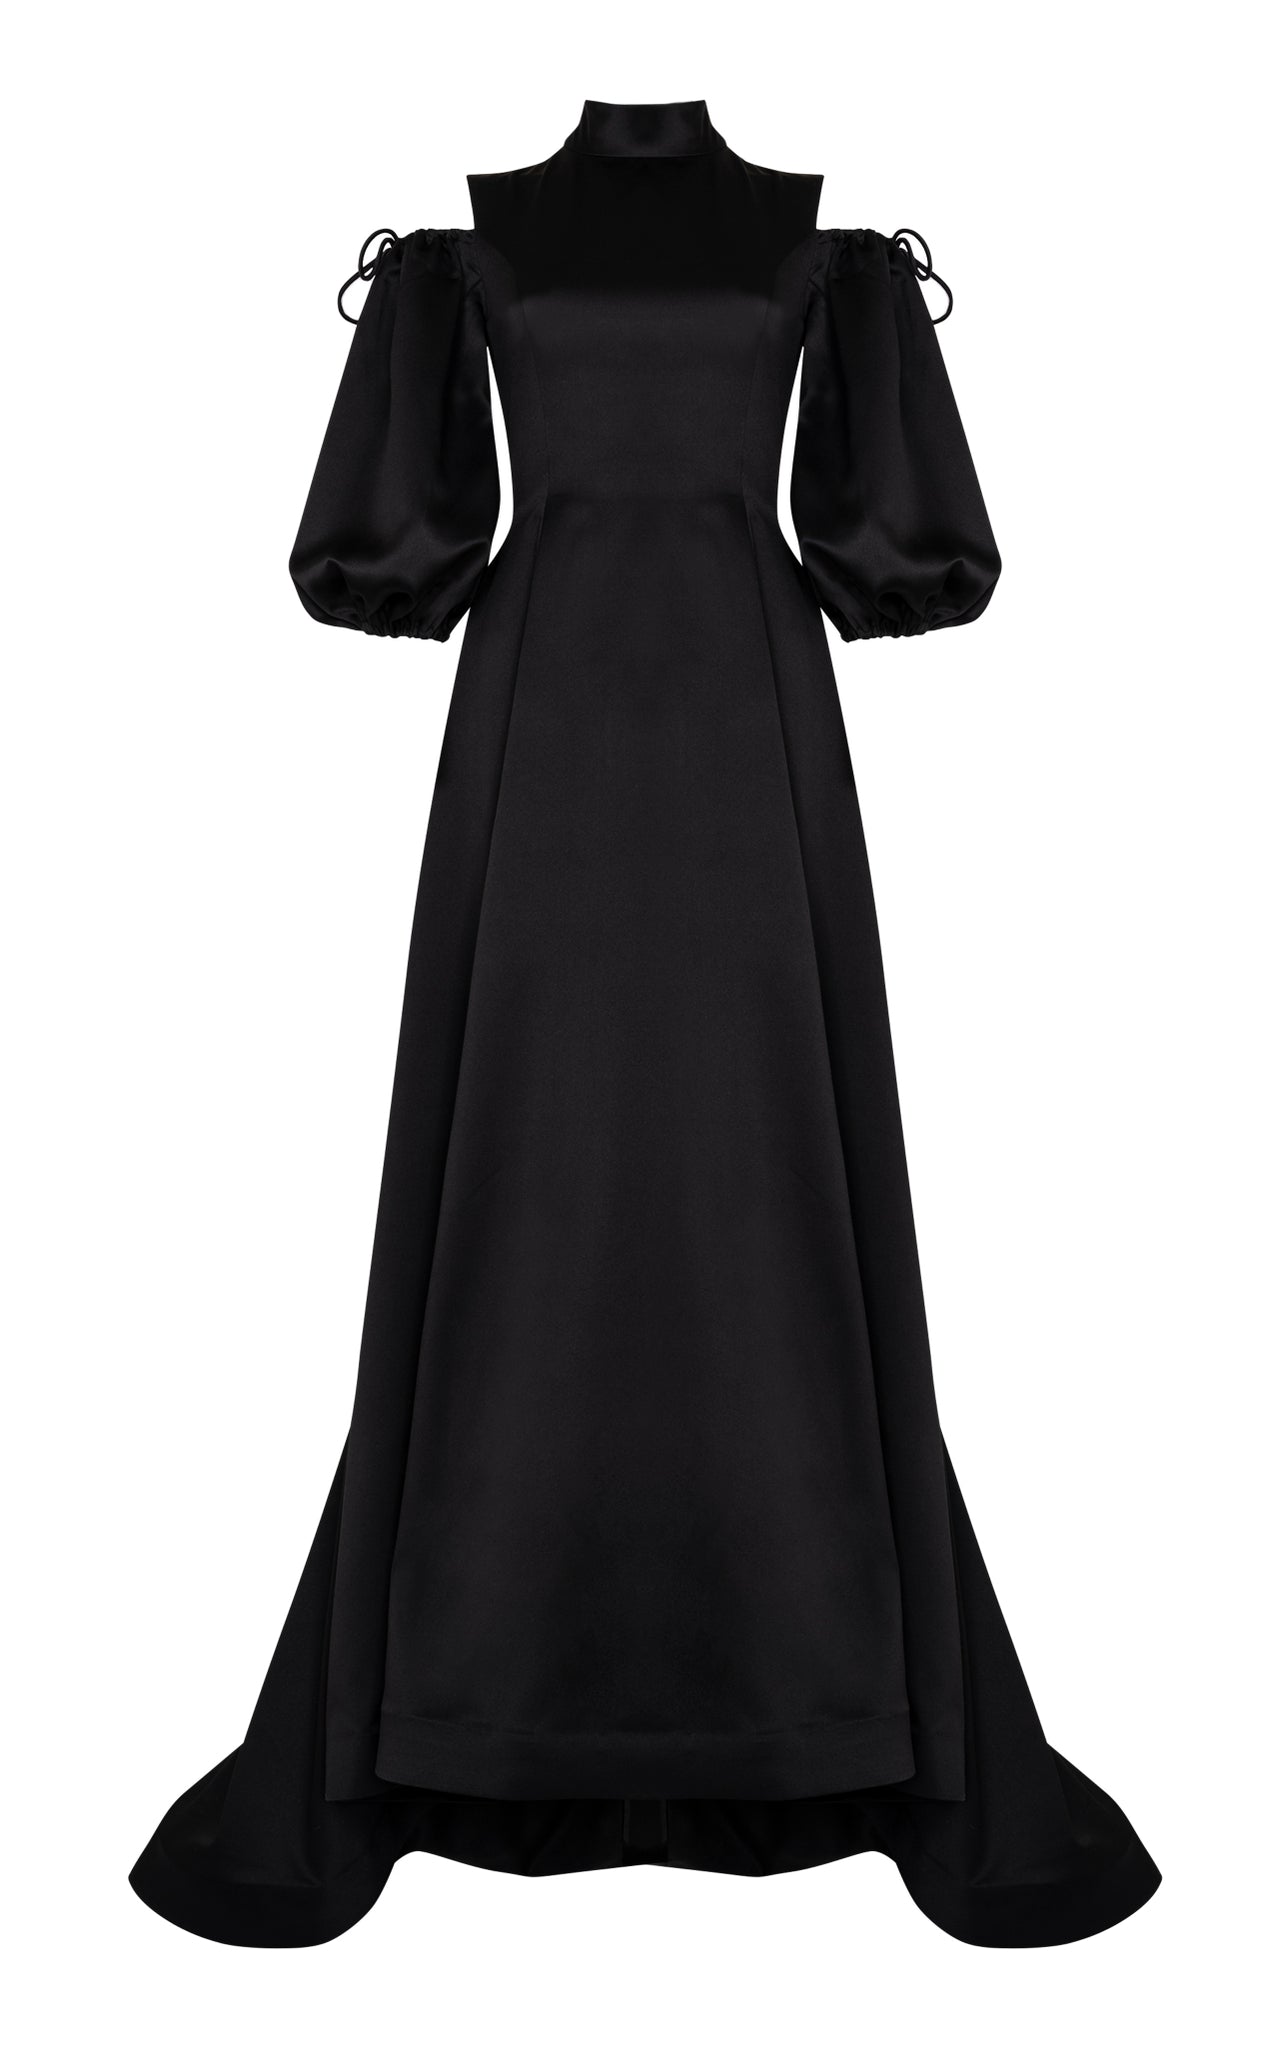 Black satin full length gown